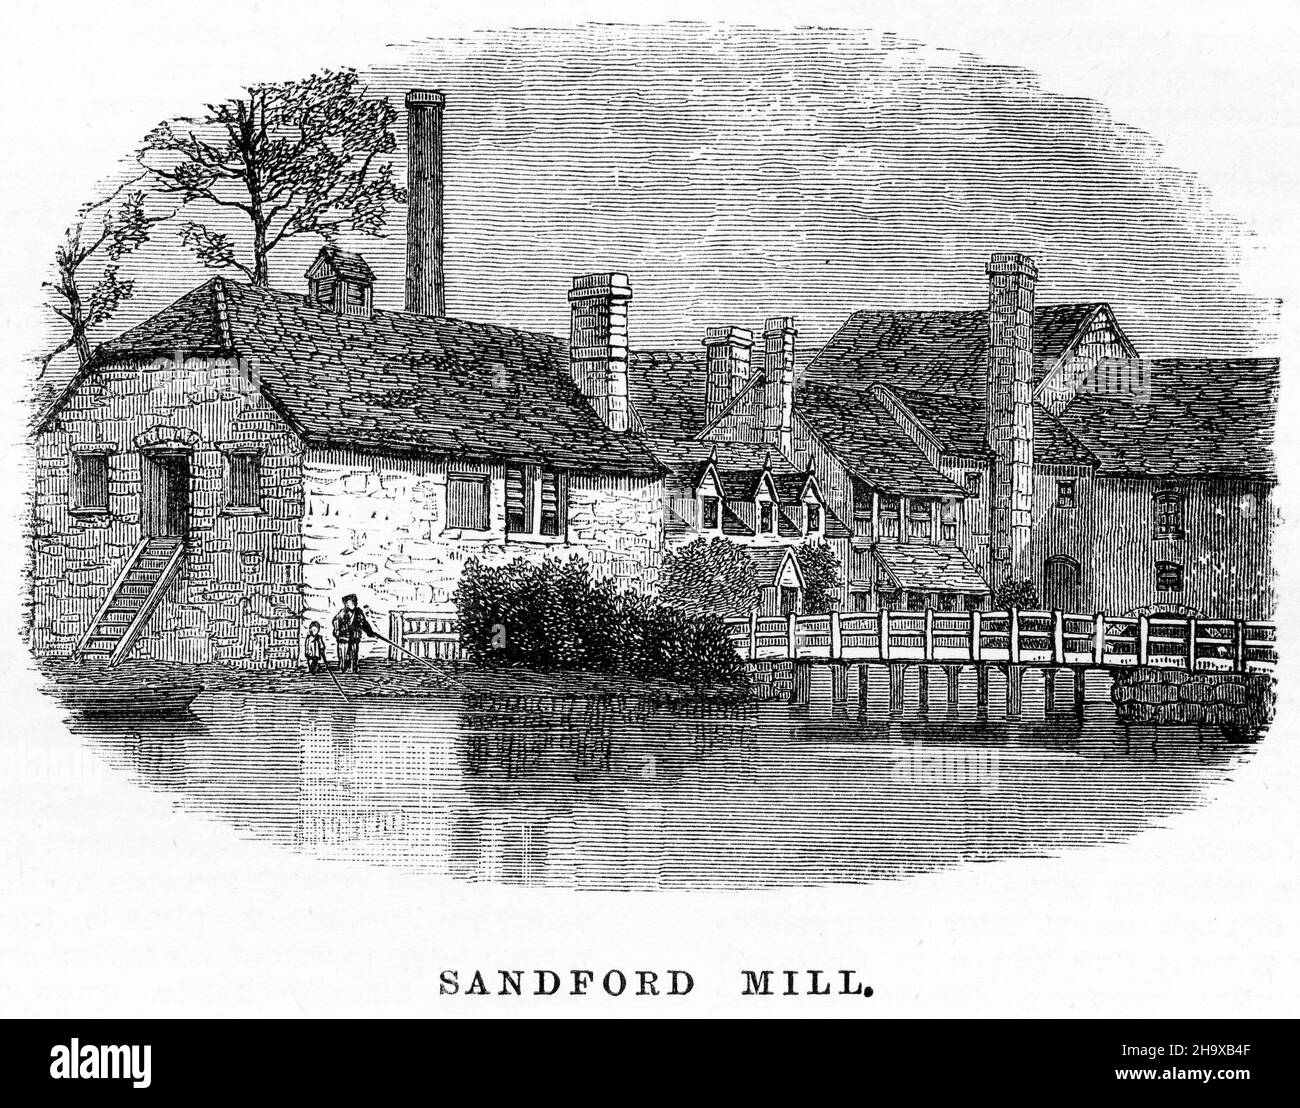 Gravure de Sandford Mill, Angleterre, d'un guide de pêche pour la Tamise, vers 1880.L'ancien moulin à maïs est maintenant un musée. Banque D'Images